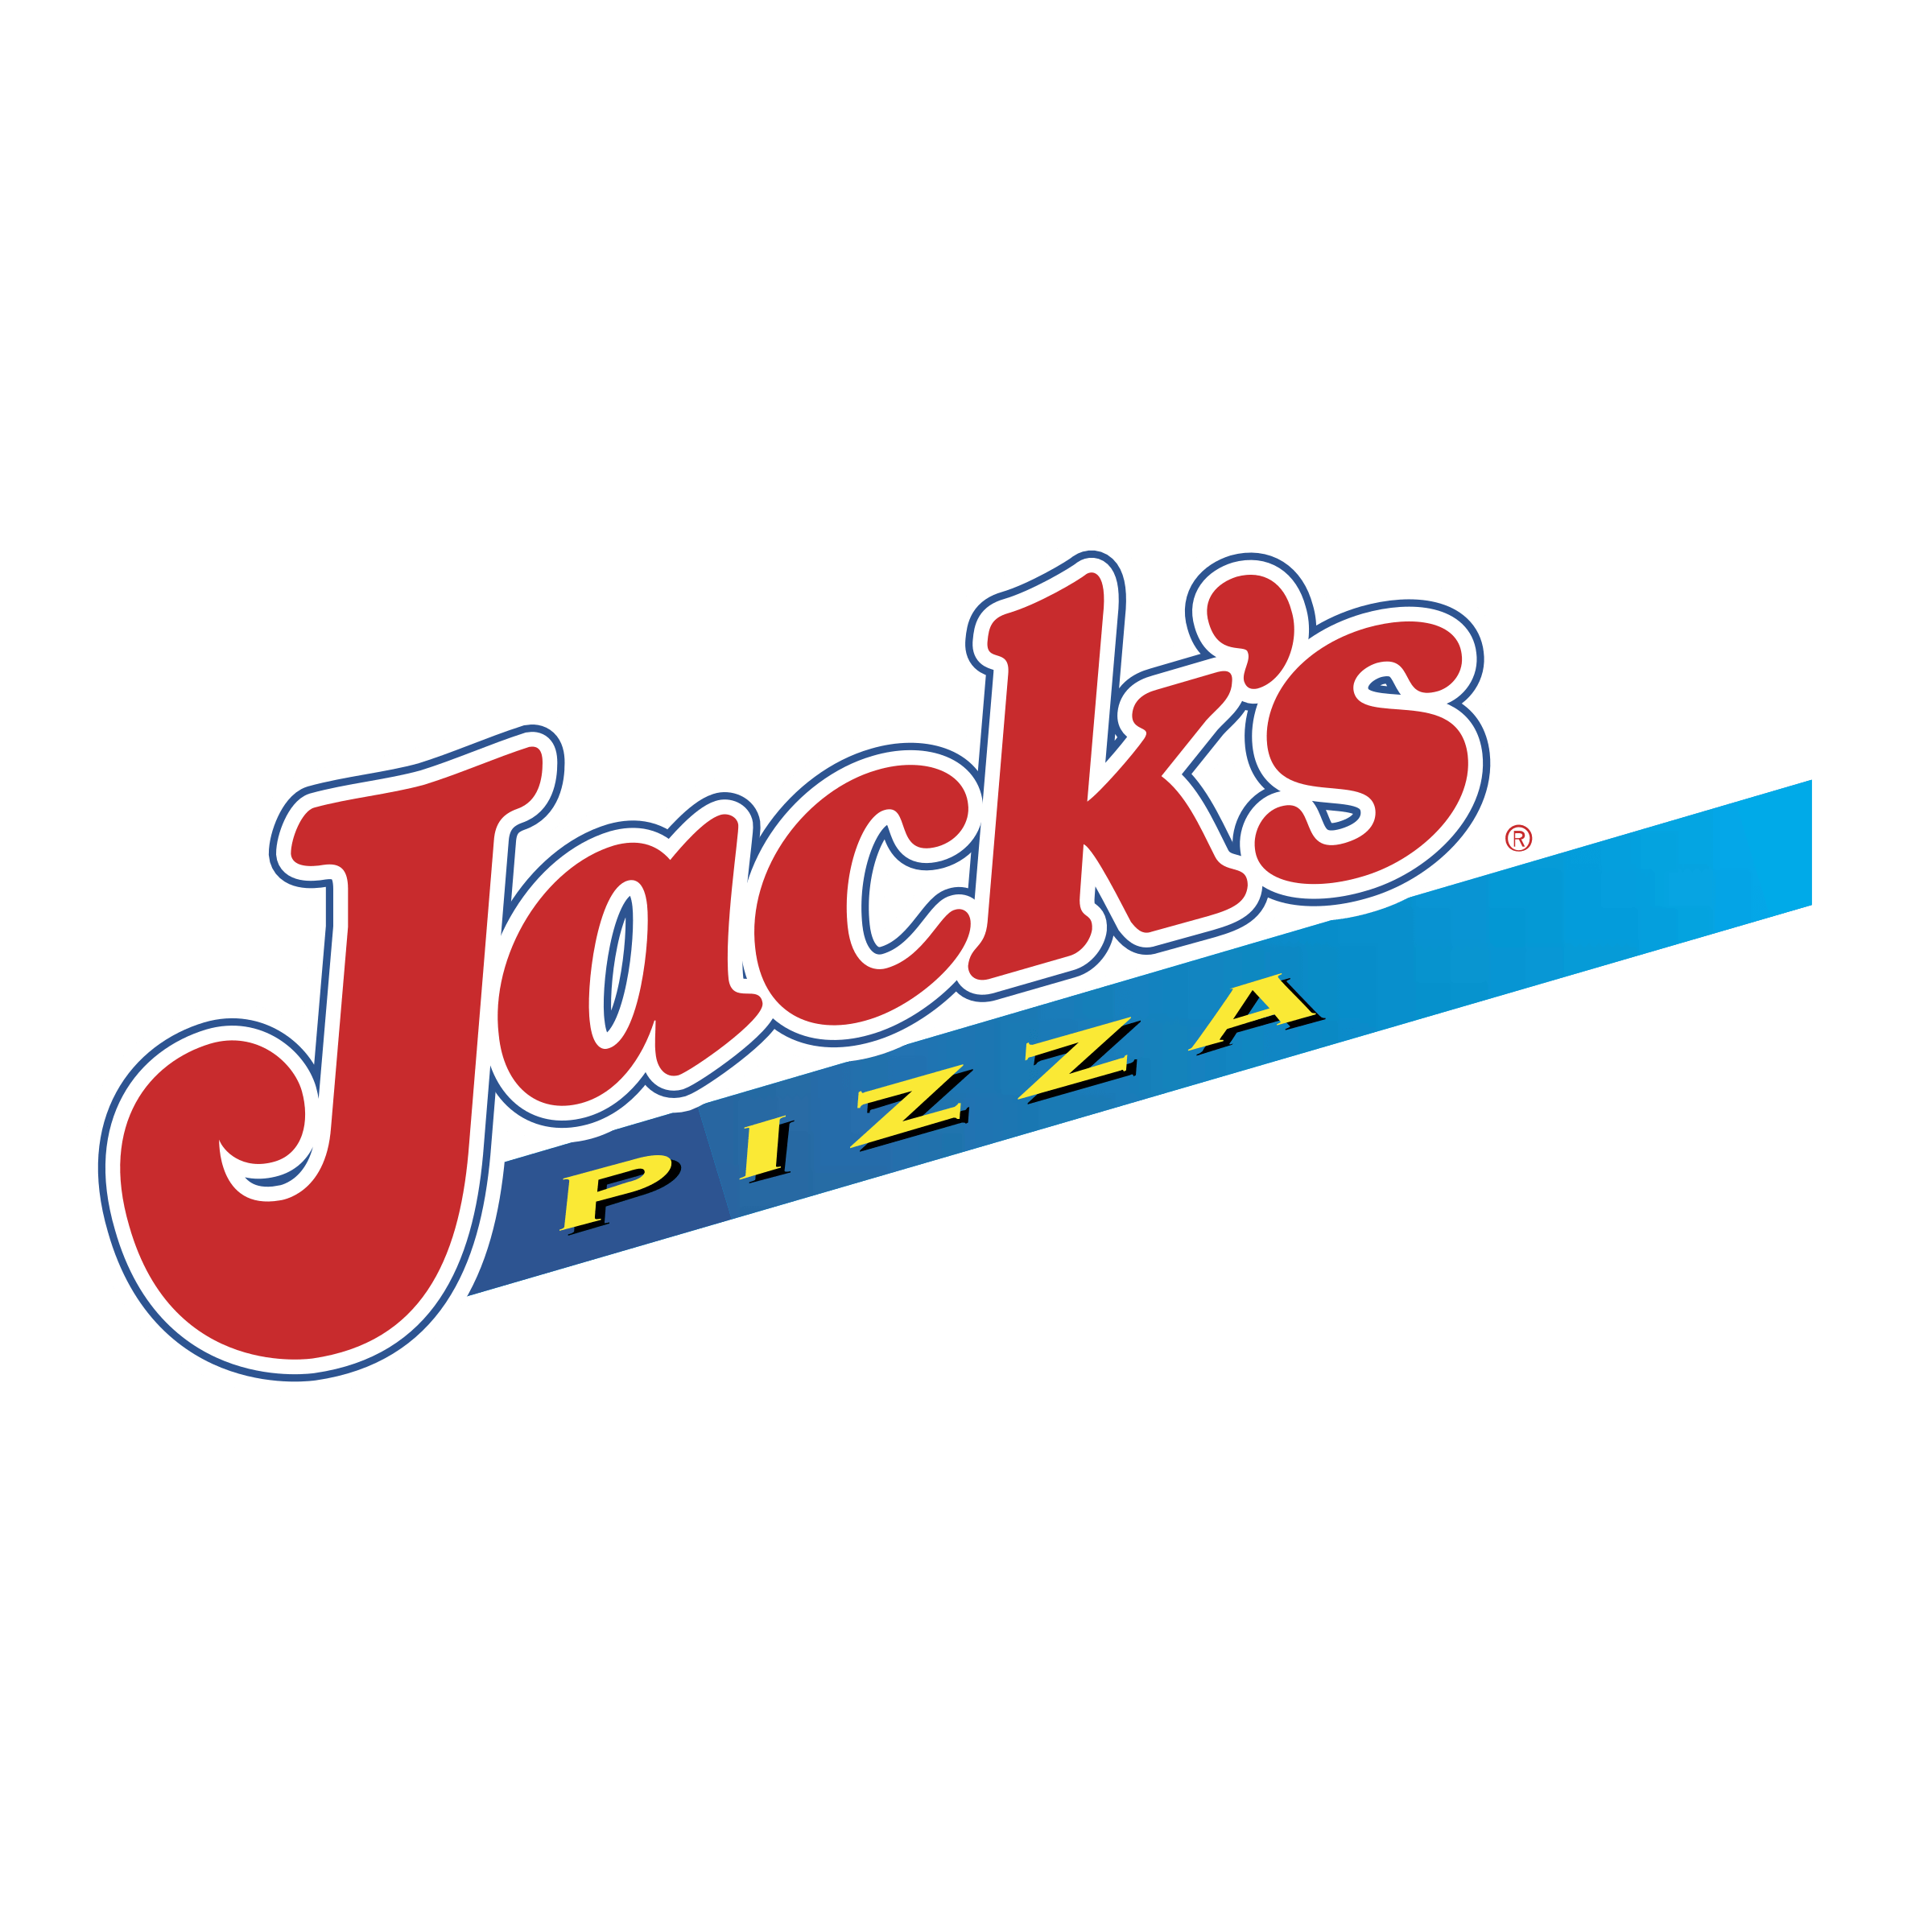 Jack's Logo - Jack's Pizza Logo PNG Transparent & SVG Vector